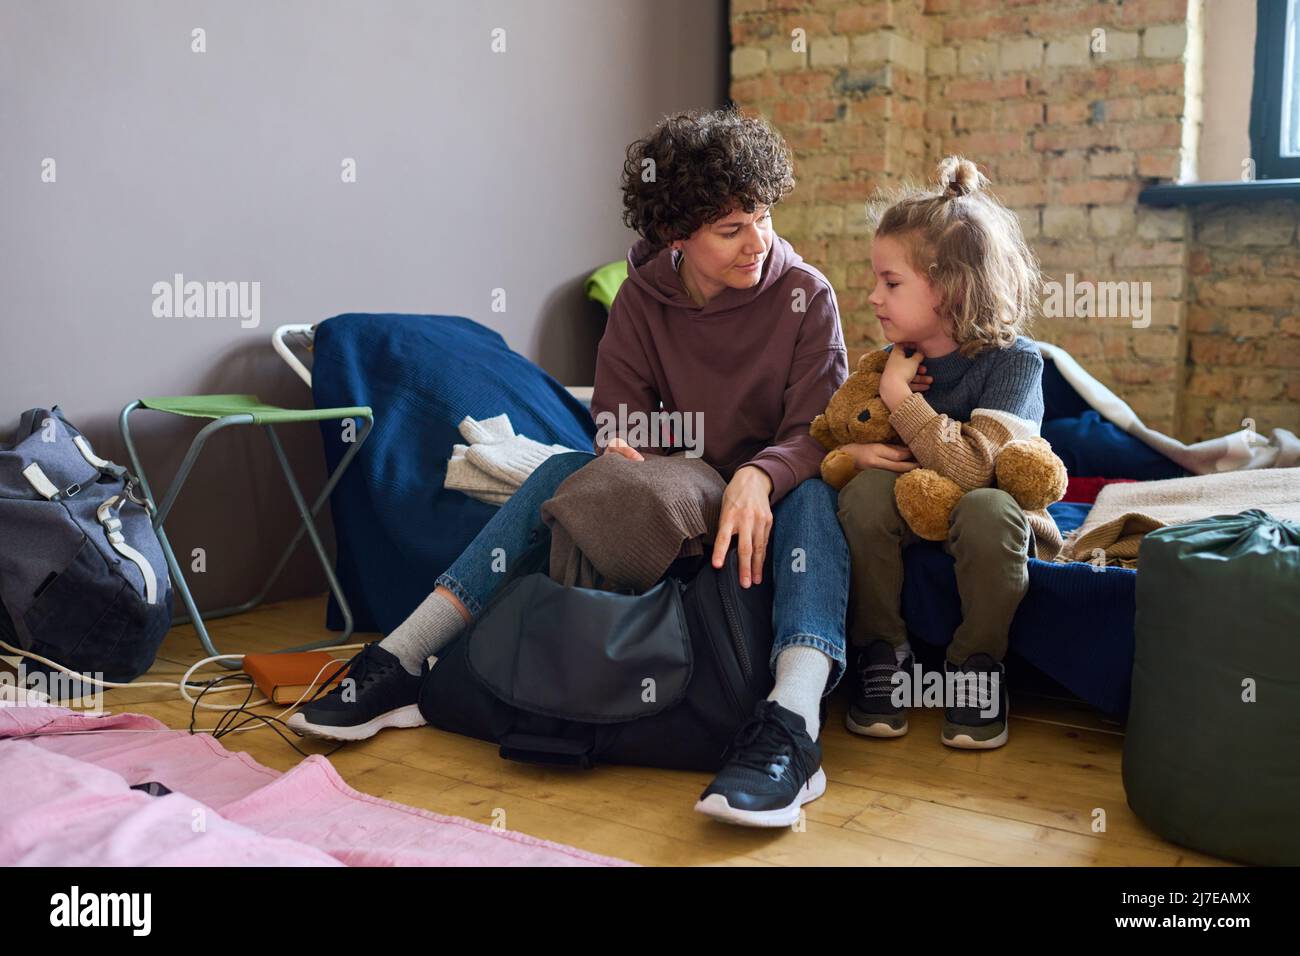 Giovane donna in casualwear che guarda suo figlio mentre si siede sulla cuchette accanto a lui e prendendo caldo maglione grigio lana fuori dalla borsa Foto Stock